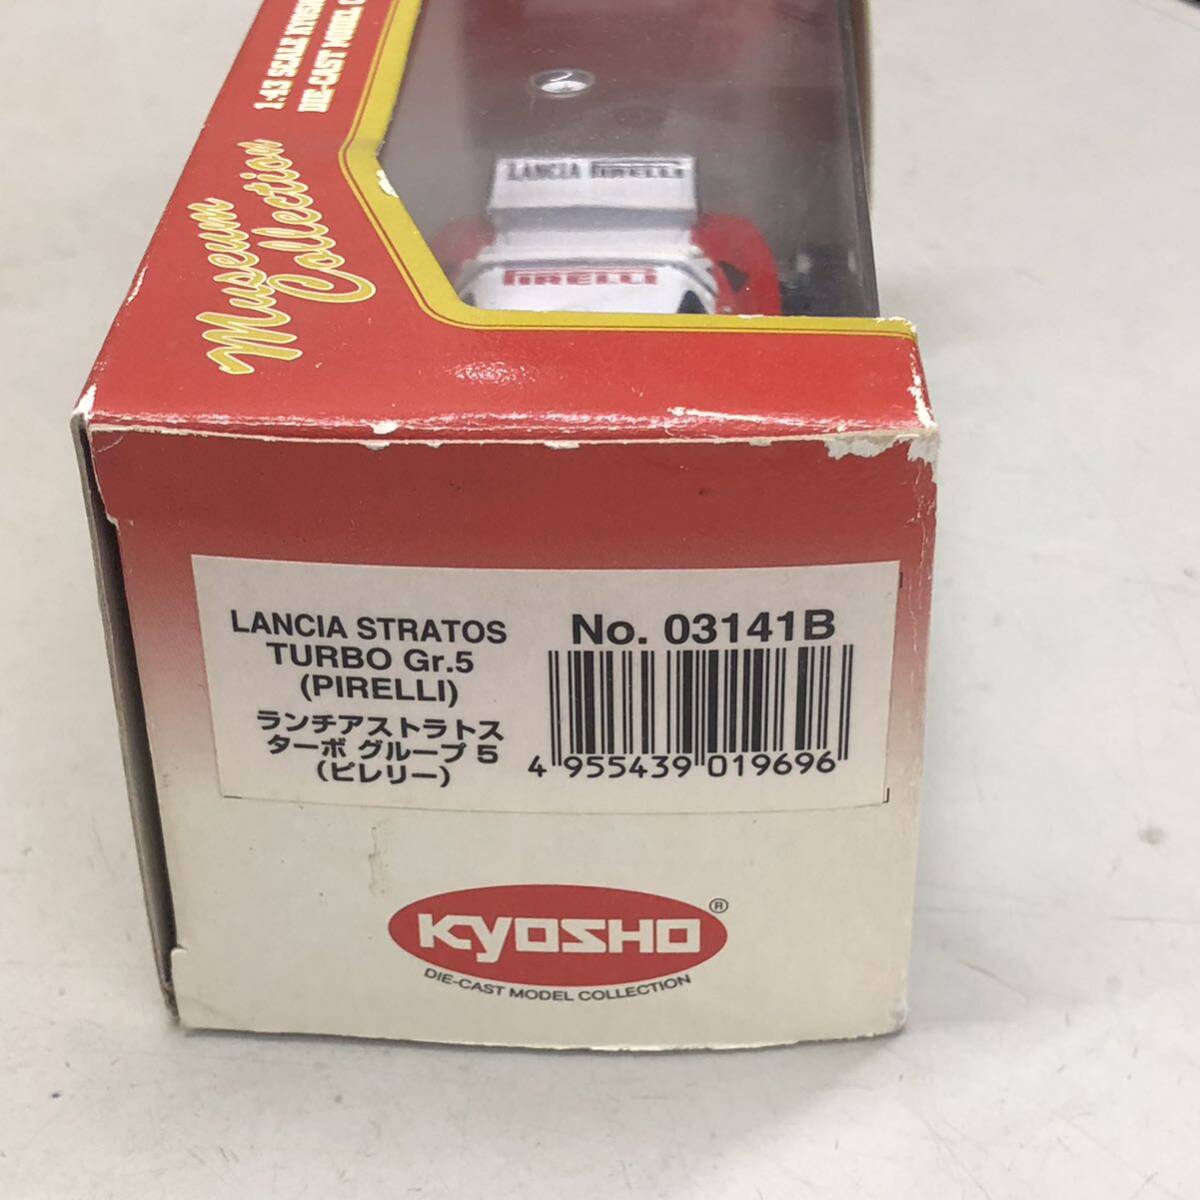 26 Kyosho ランチア ストラトス ターボ グループ5 1/43 中古 現状品 モデルカー レーシングカー LANCIA _画像2